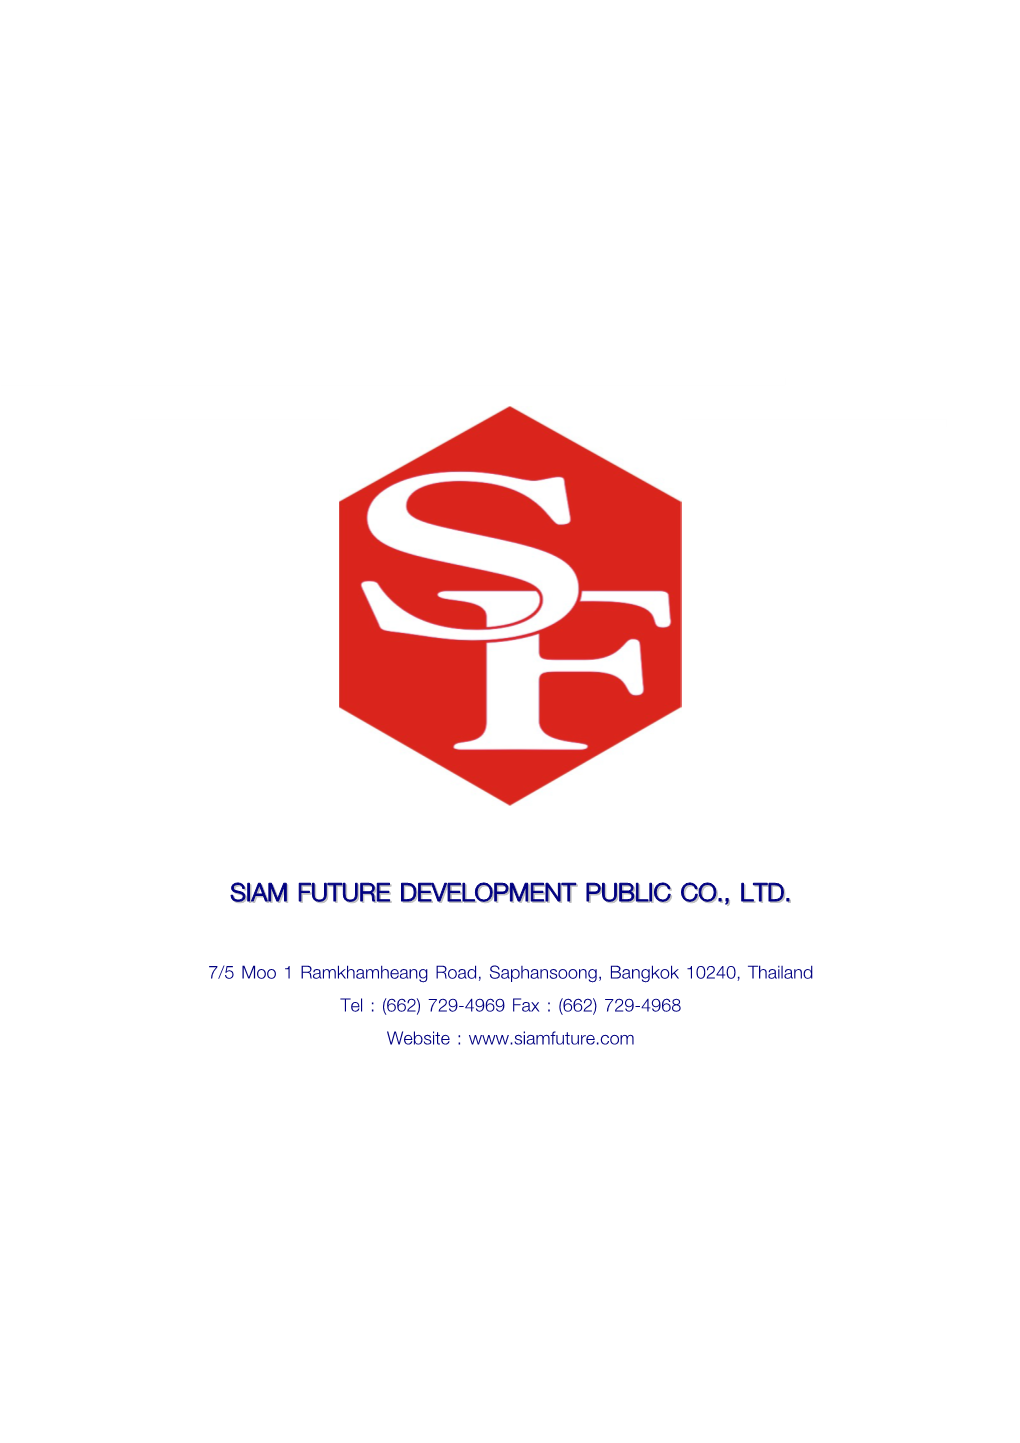 Siam Future Development Public Co., Ltd